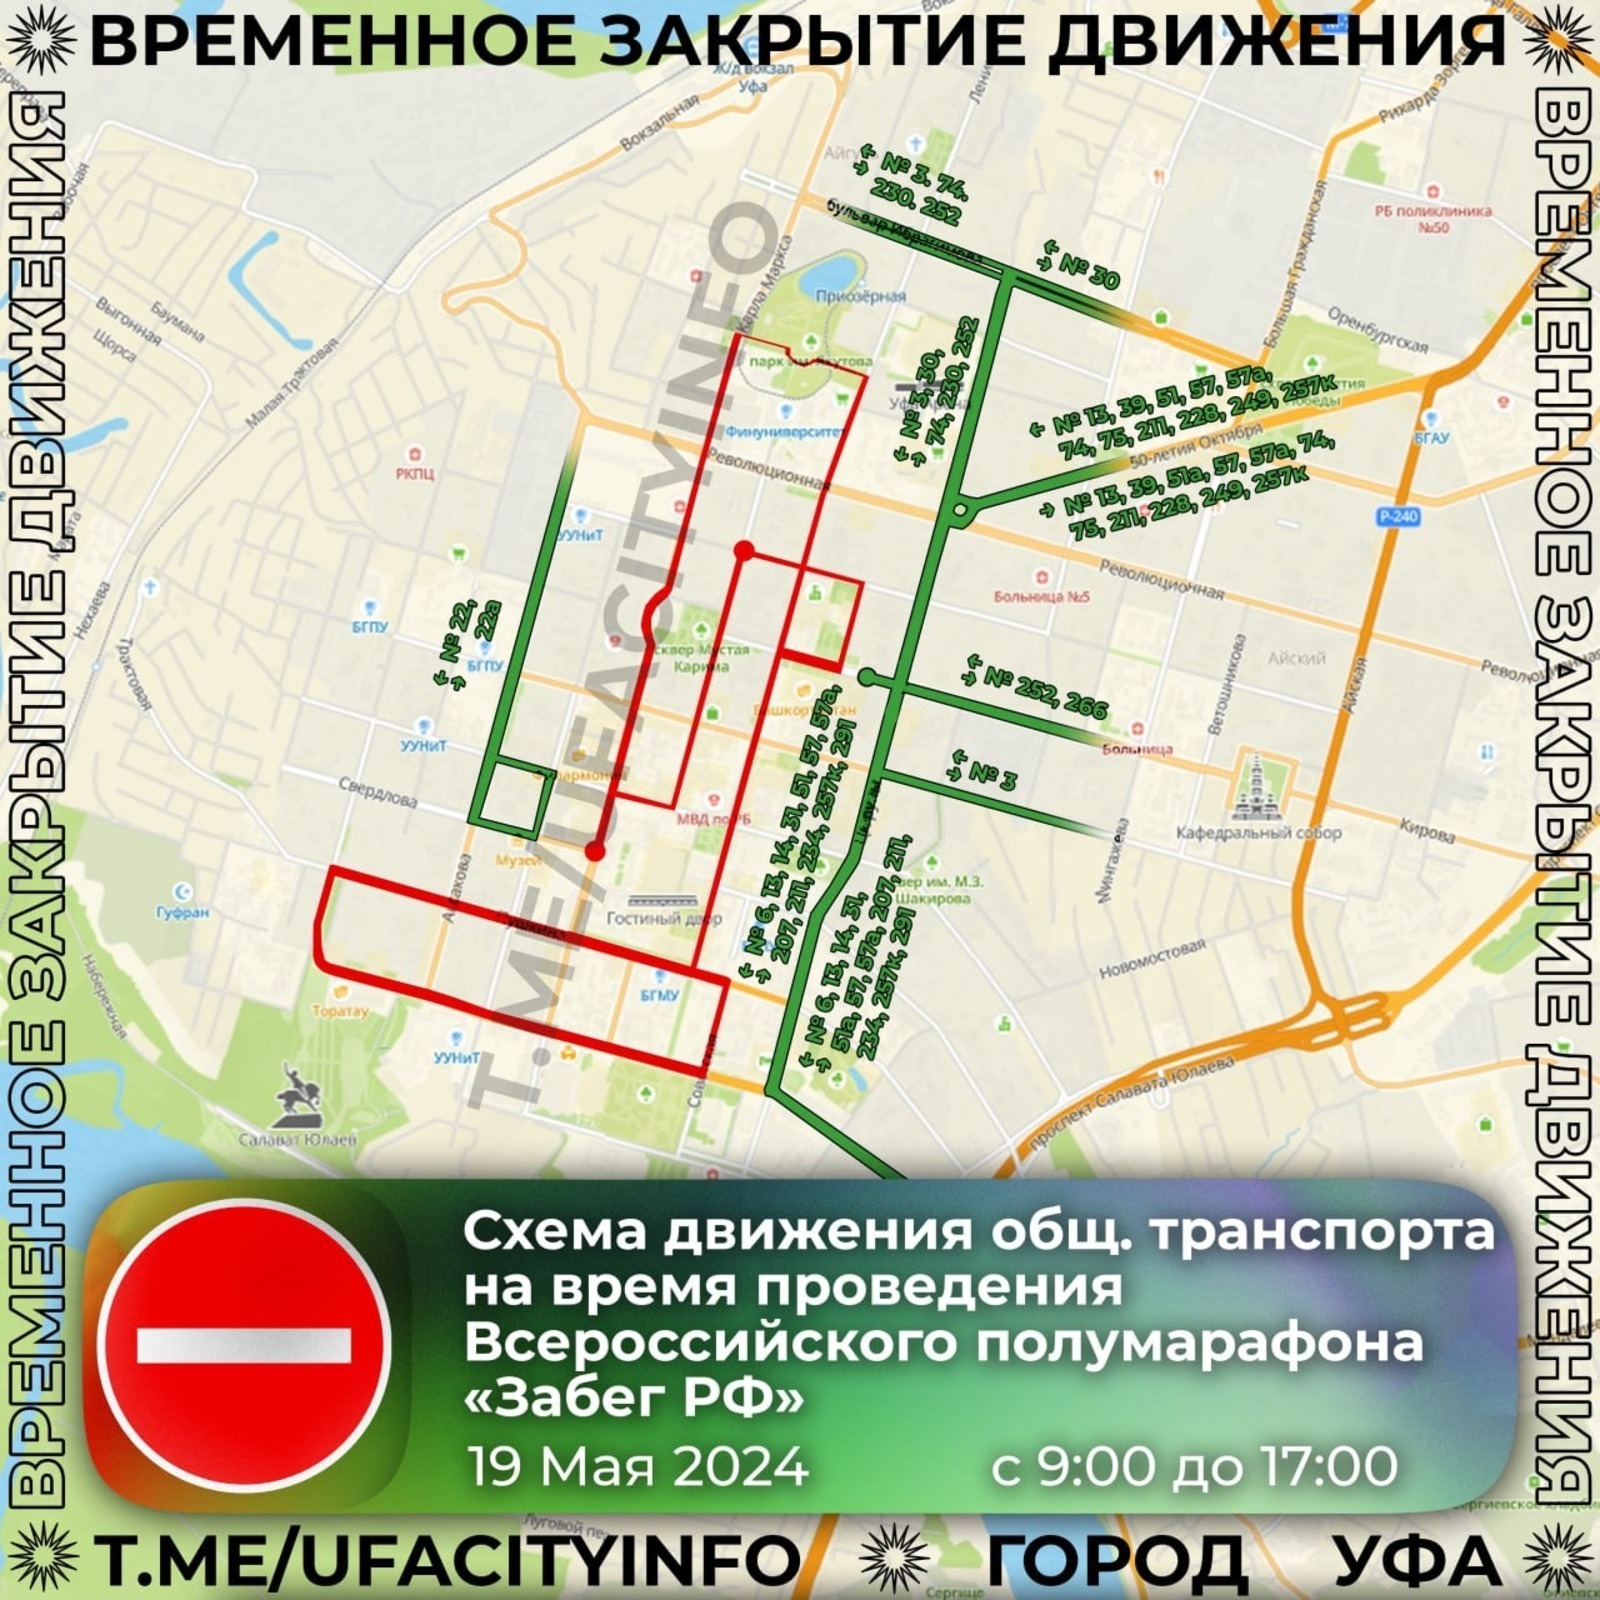 В Уфе на время всероссийского полумарафона перекроют ряд улиц